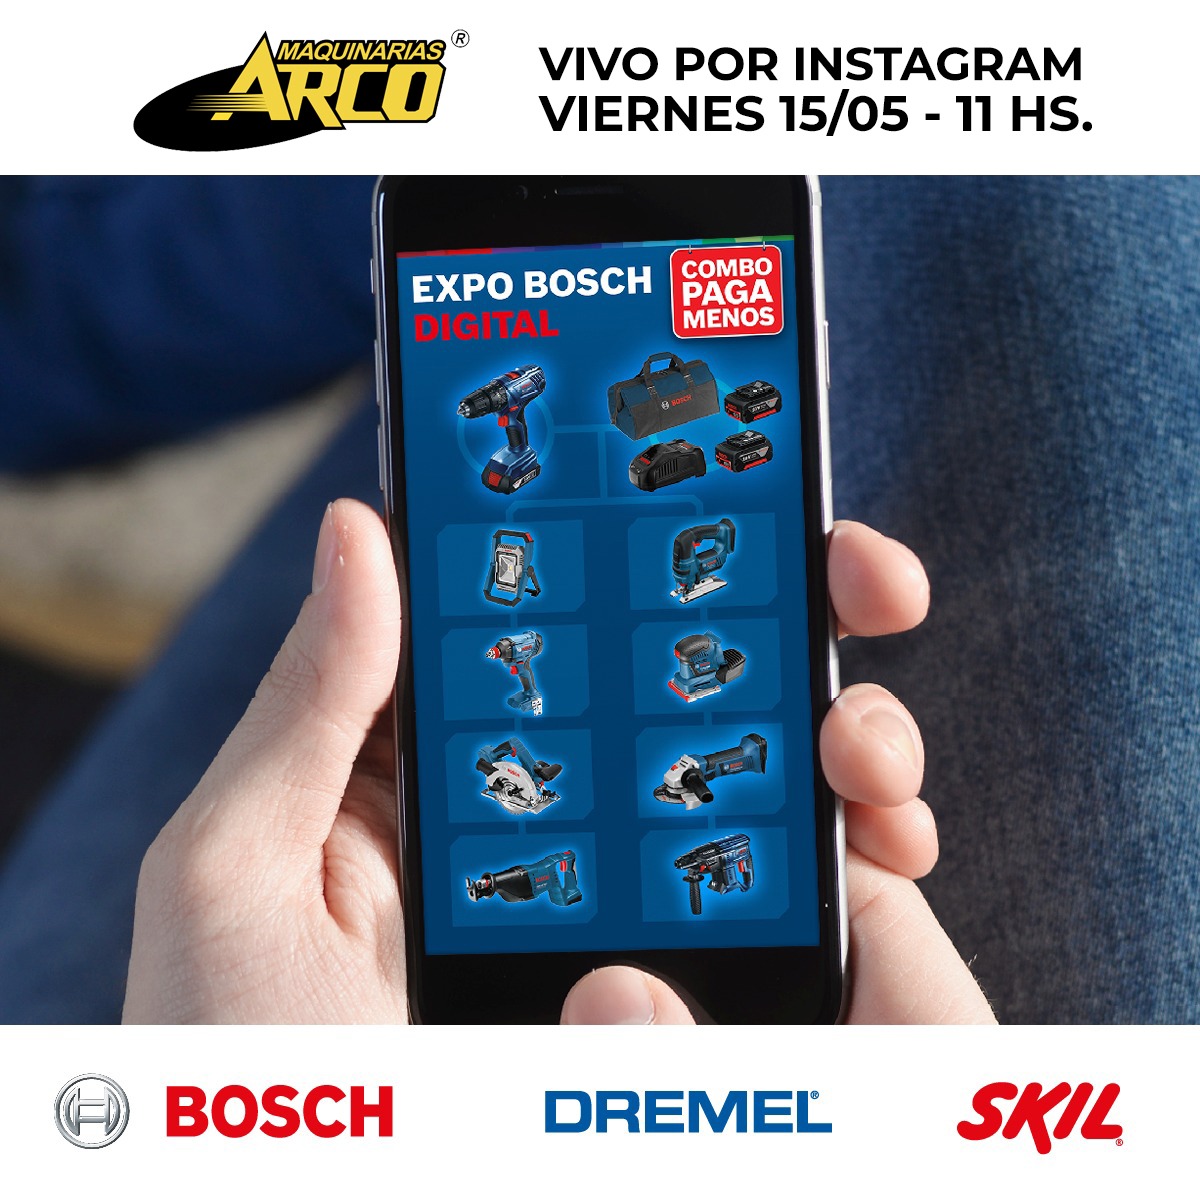 Expo Bosch Digital!!